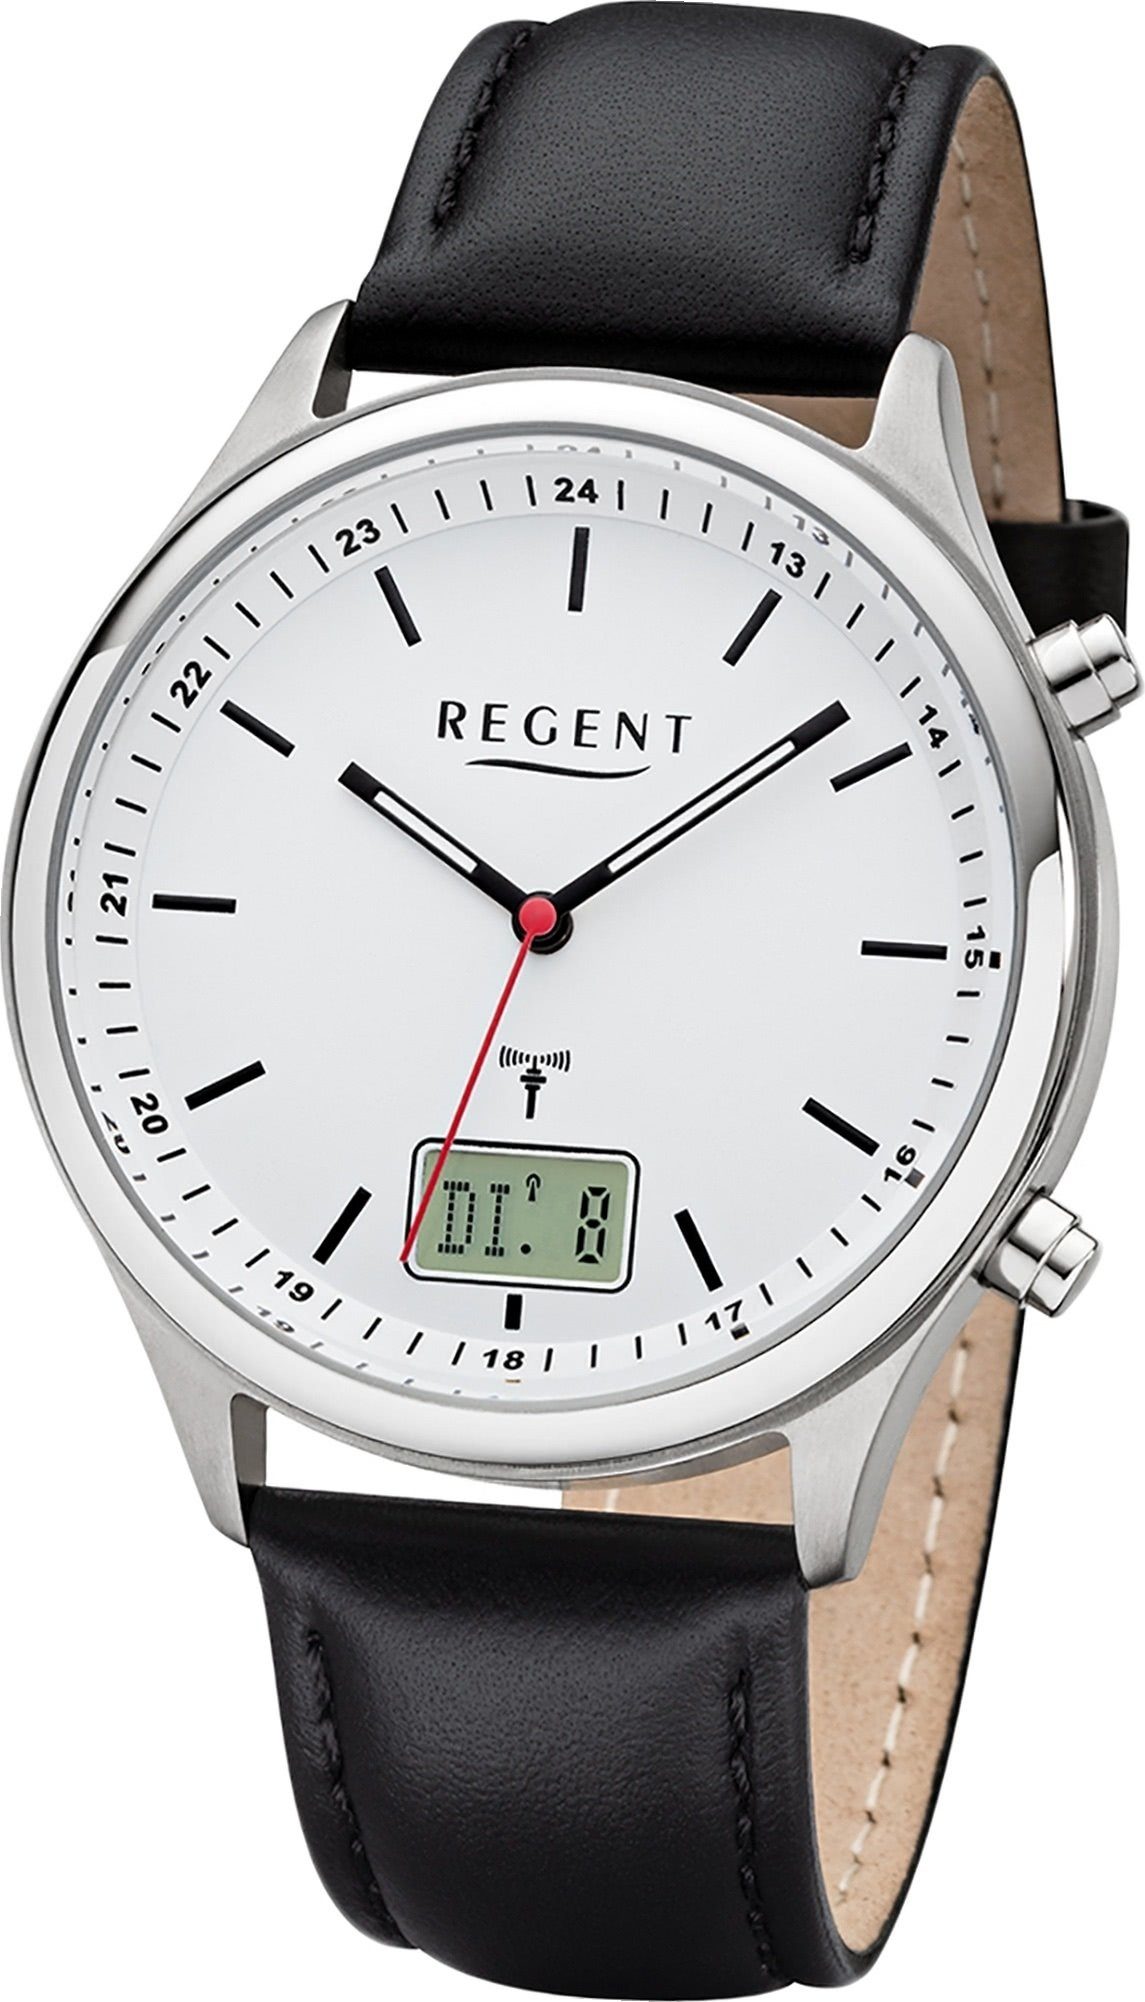 Regent Funkuhr Regent Analog-Digital Herren Uhr BA-449, Herrenuhr Lederarmband schwarz, rundes Gehäuse, groß (ca. 40mm)